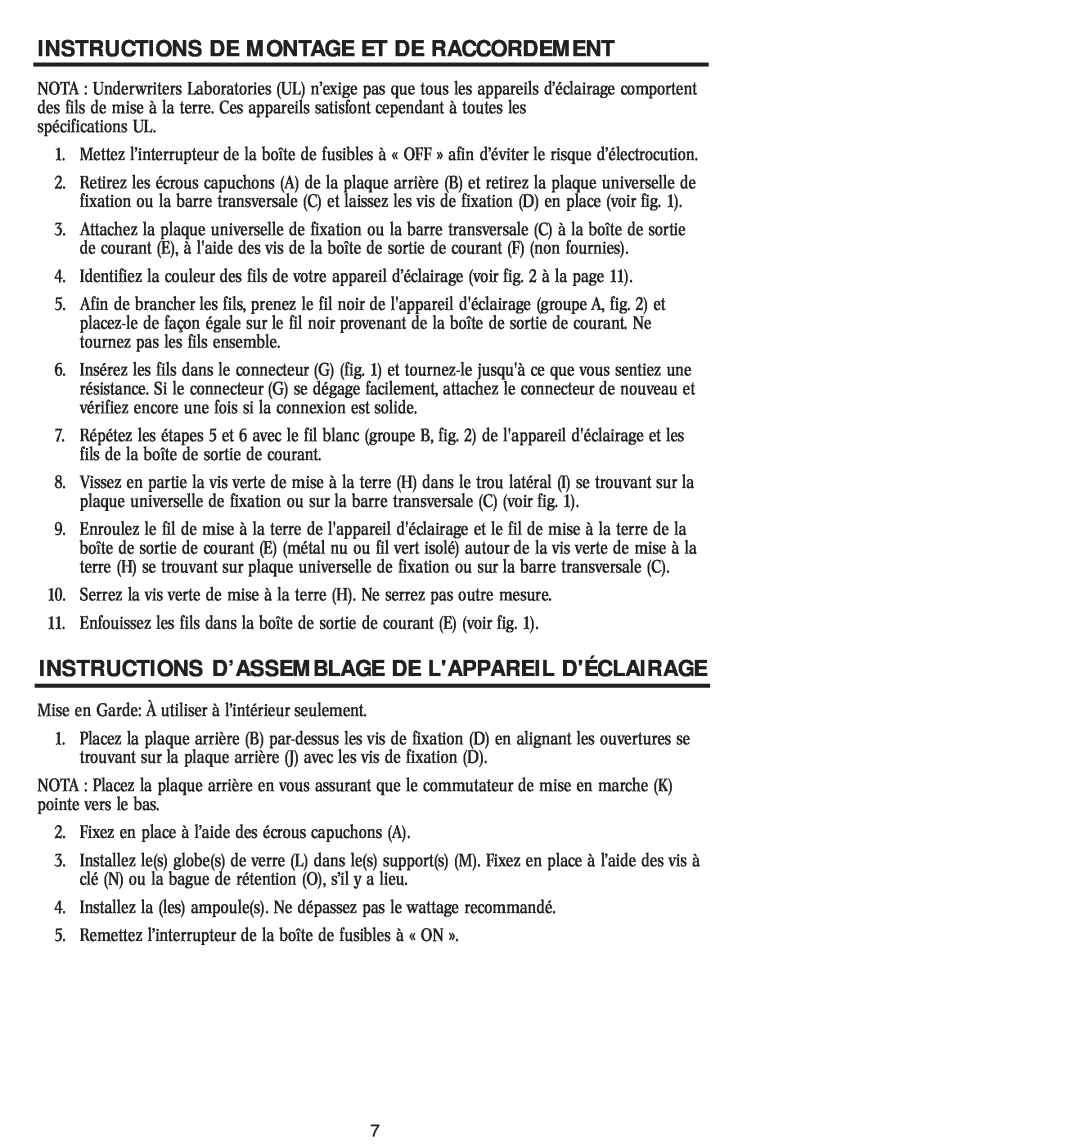 Westinghouse W-048 Instructions D’Assemblage De Lappareil Déclairage, Instructions De Montage Et De Raccordement 